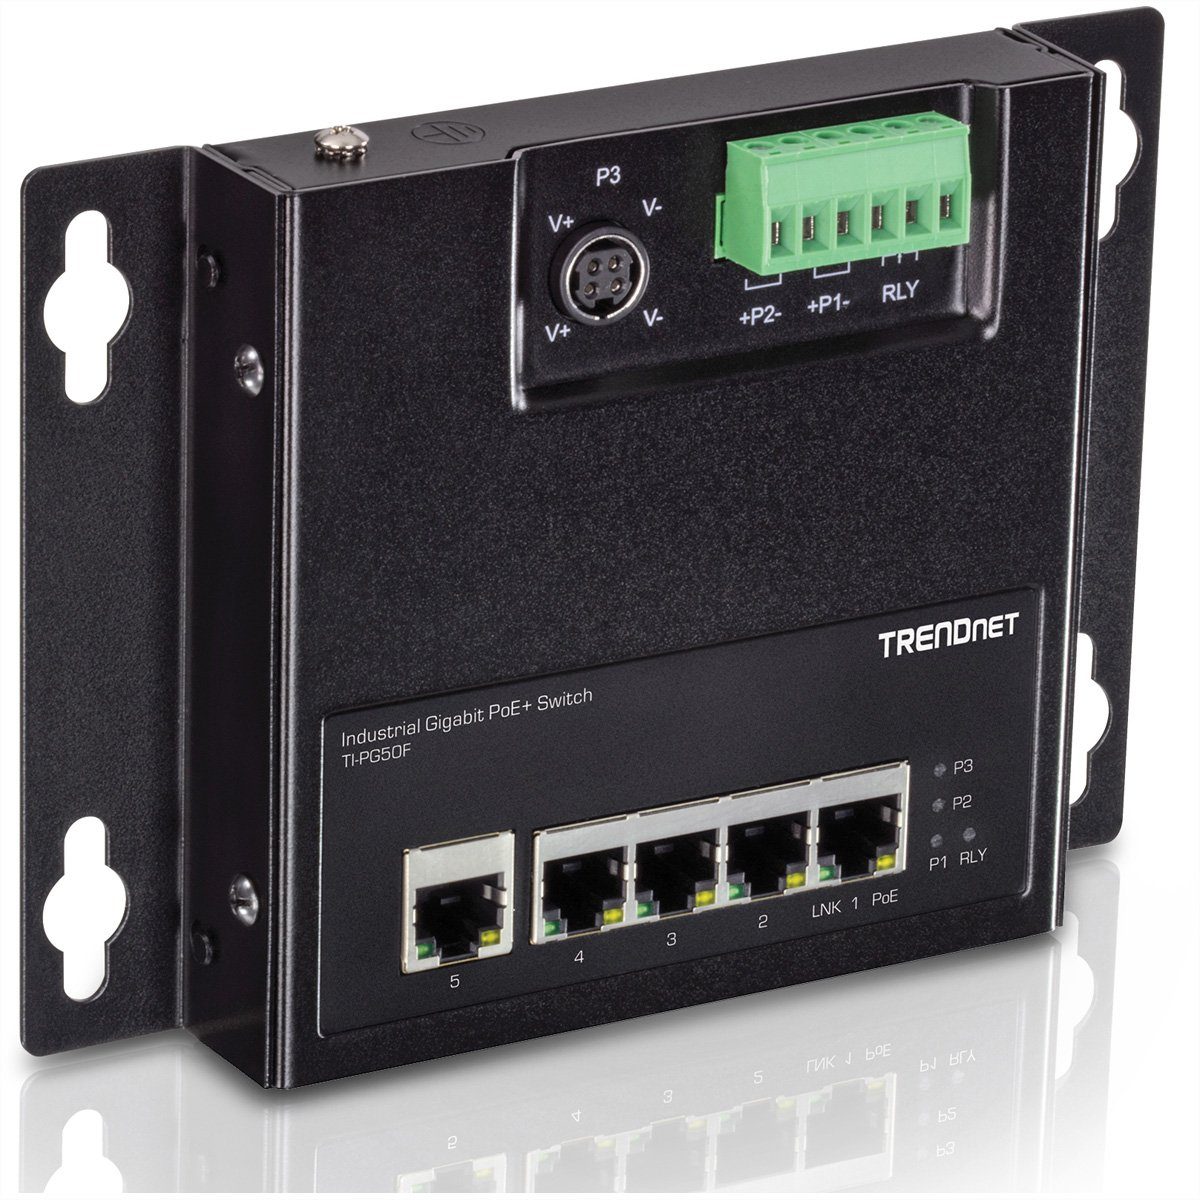 Access PoE+ Netzwerk-Switch Front Trendnet Gigabit 5-Port TI-PG50F Industrial (wandmontierbar) Switch